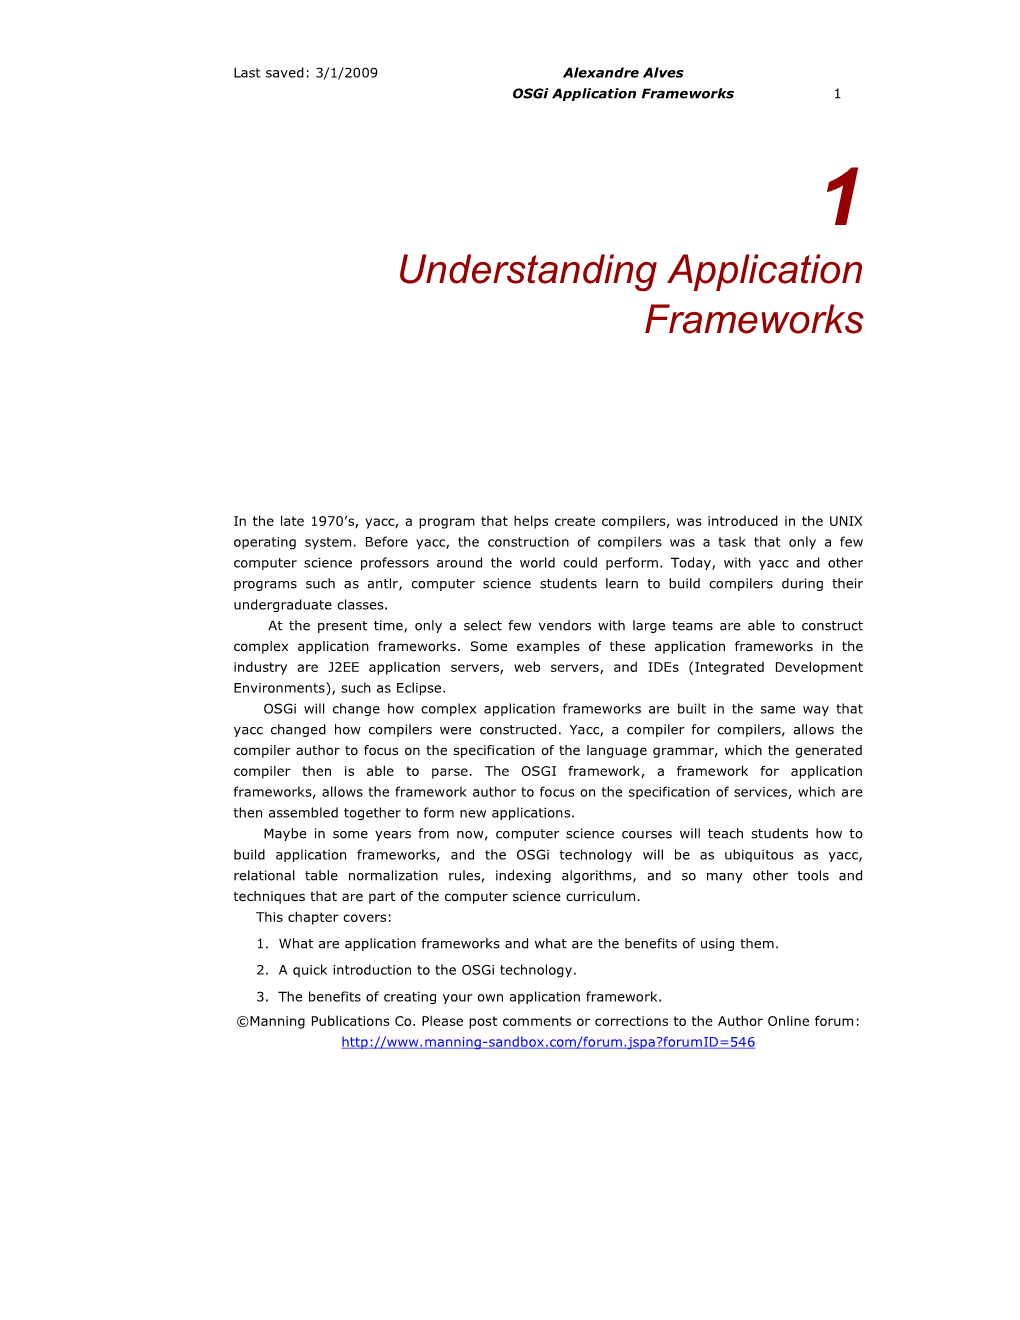 Understanding Application Frameworks